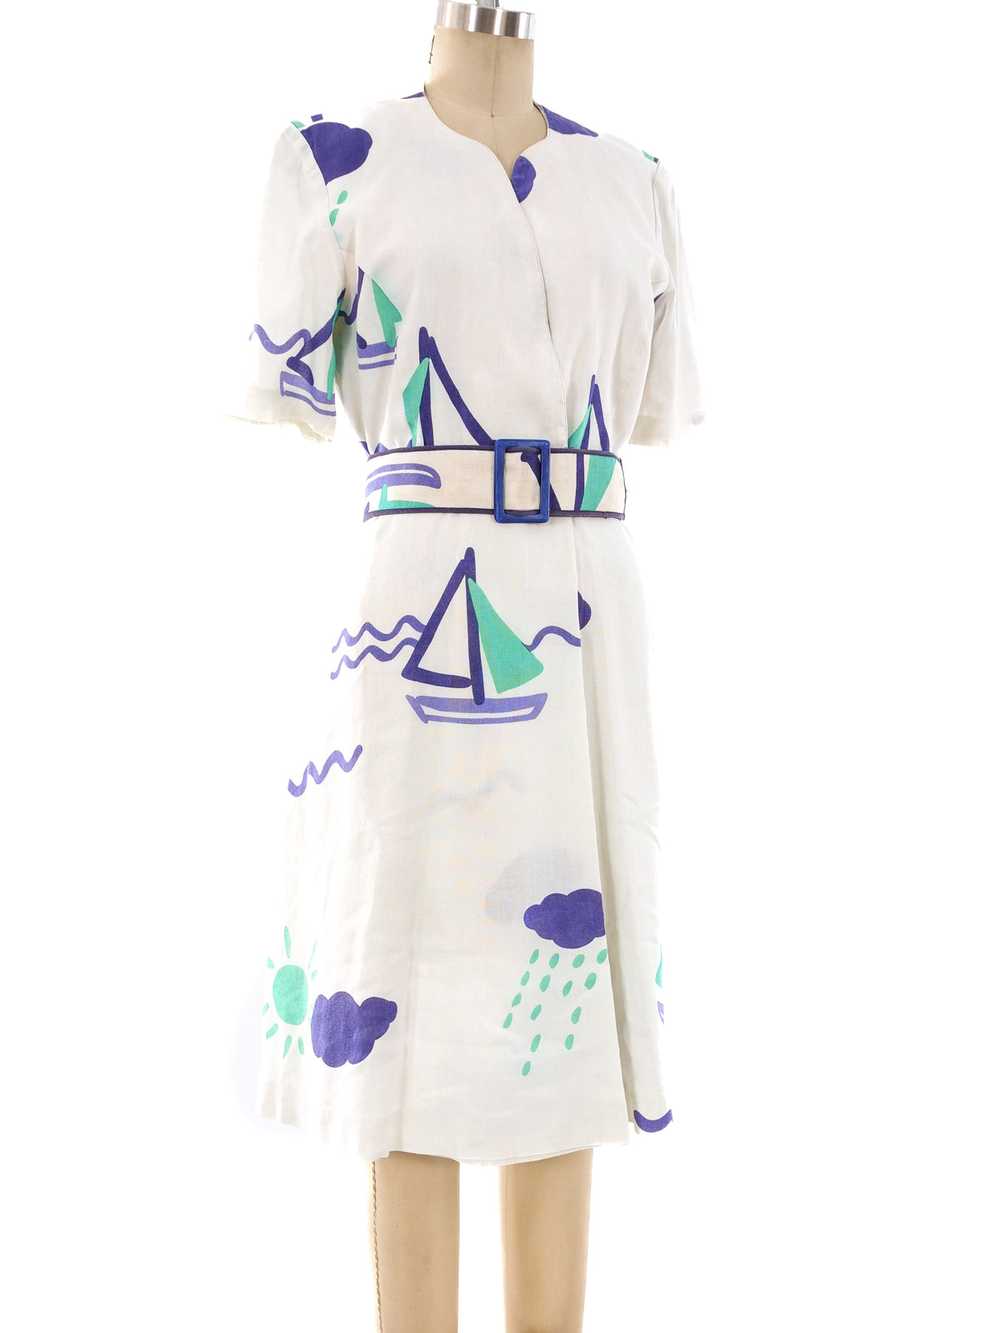 Hanae Mori Nautical Print Dress - image 3